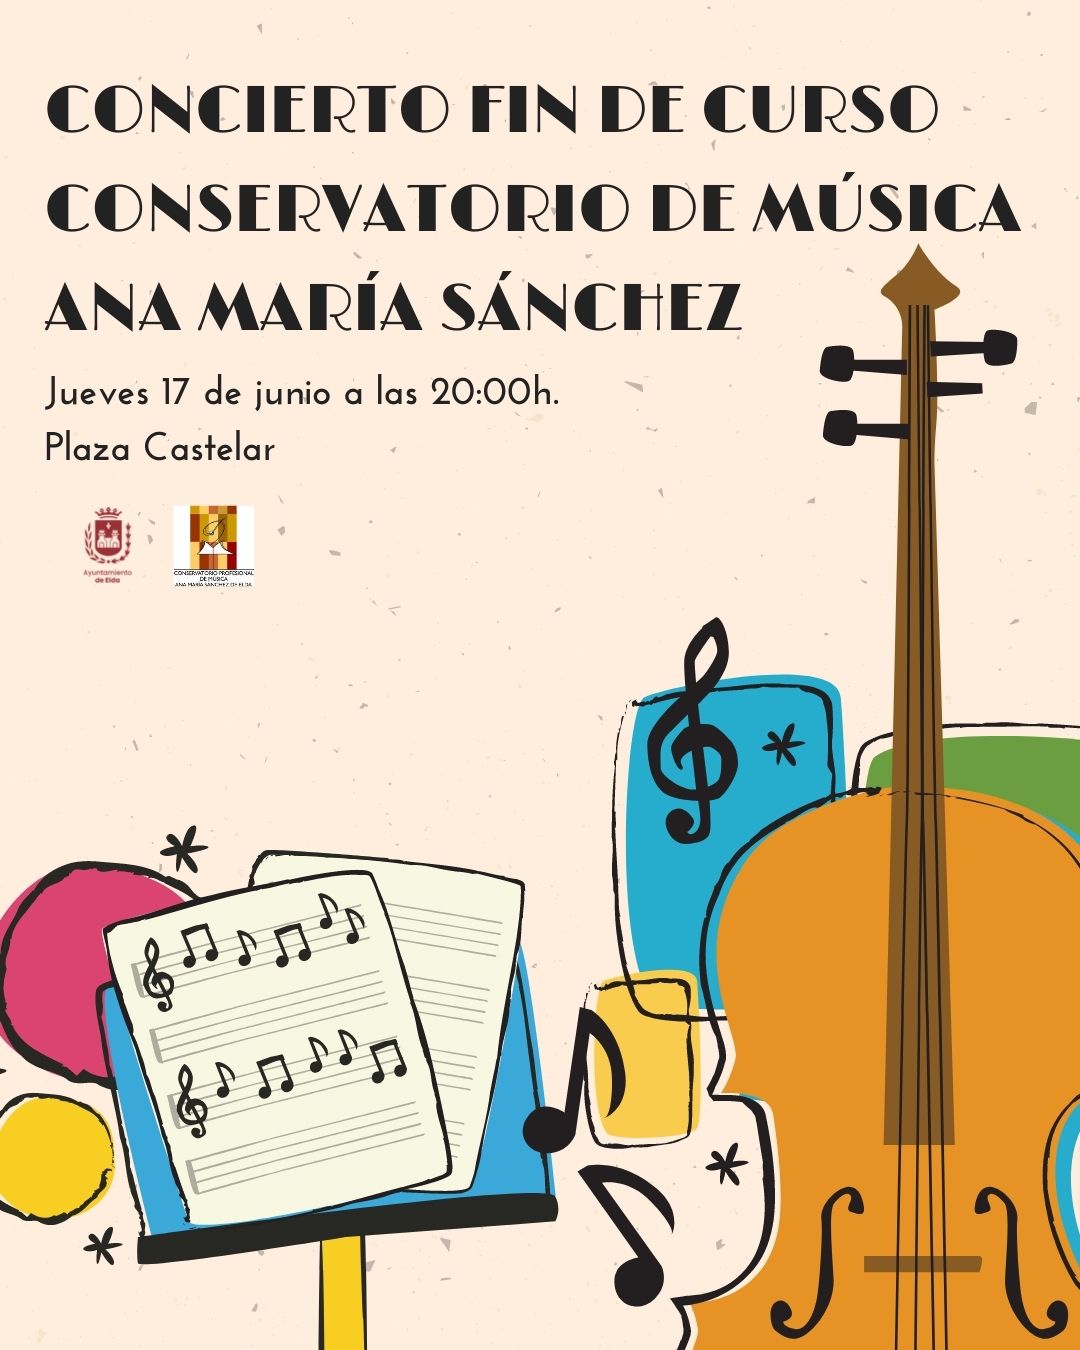 El Conservatorio Profesional de Música ‘Ana María Sánchez’ finaliza el curso mañana jueves  con un concierto de música del alumnado